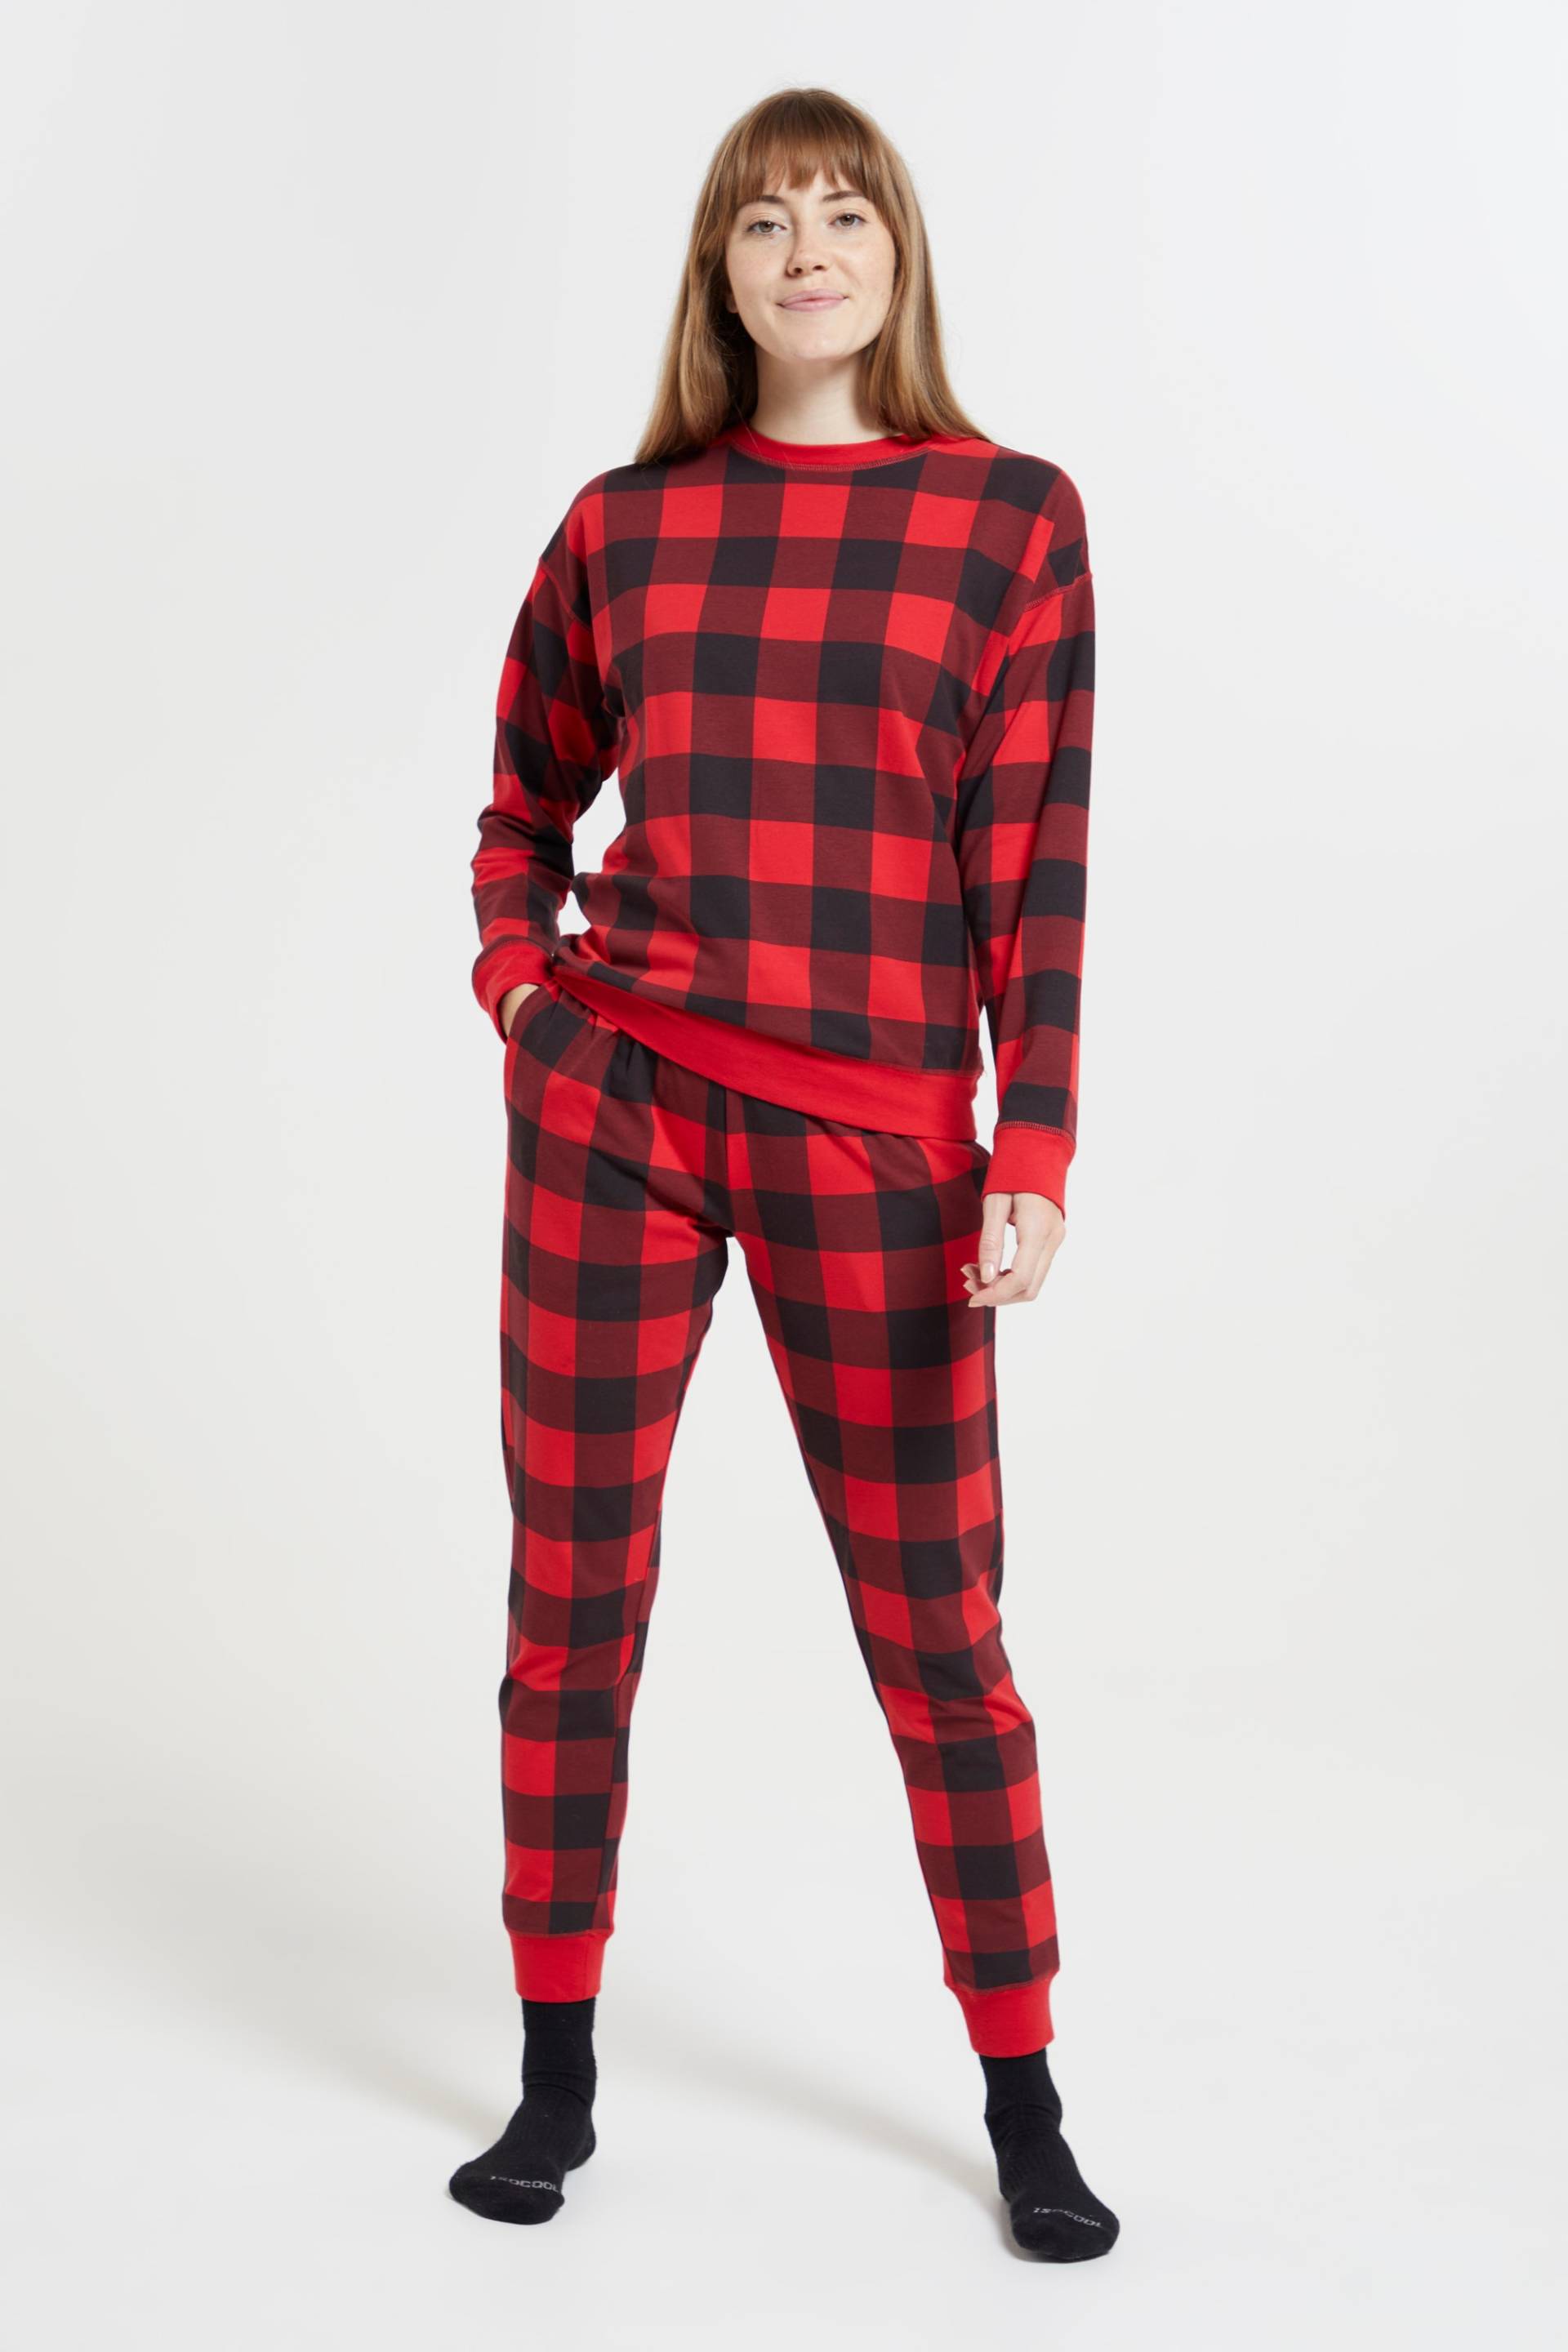 Bedrucktes Pyjama-Set für Damen - Rot von Mountain Warehouse